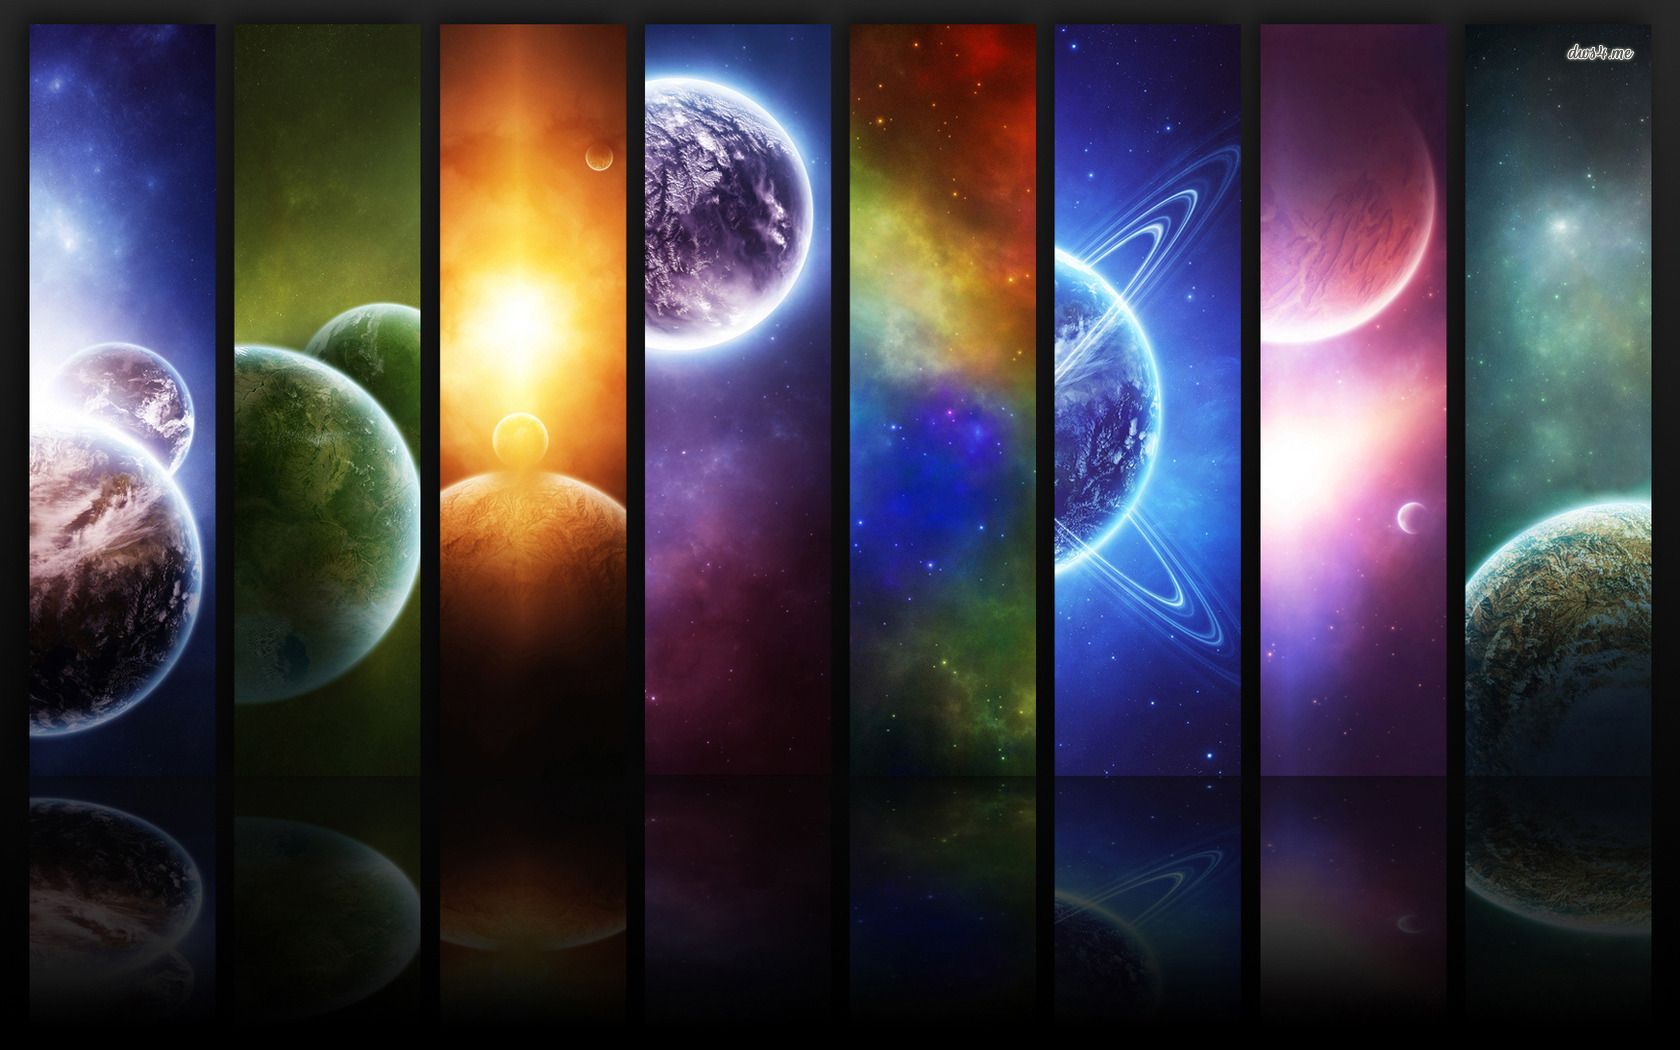 Solar System wallpaper - Digital Art wallpapers -